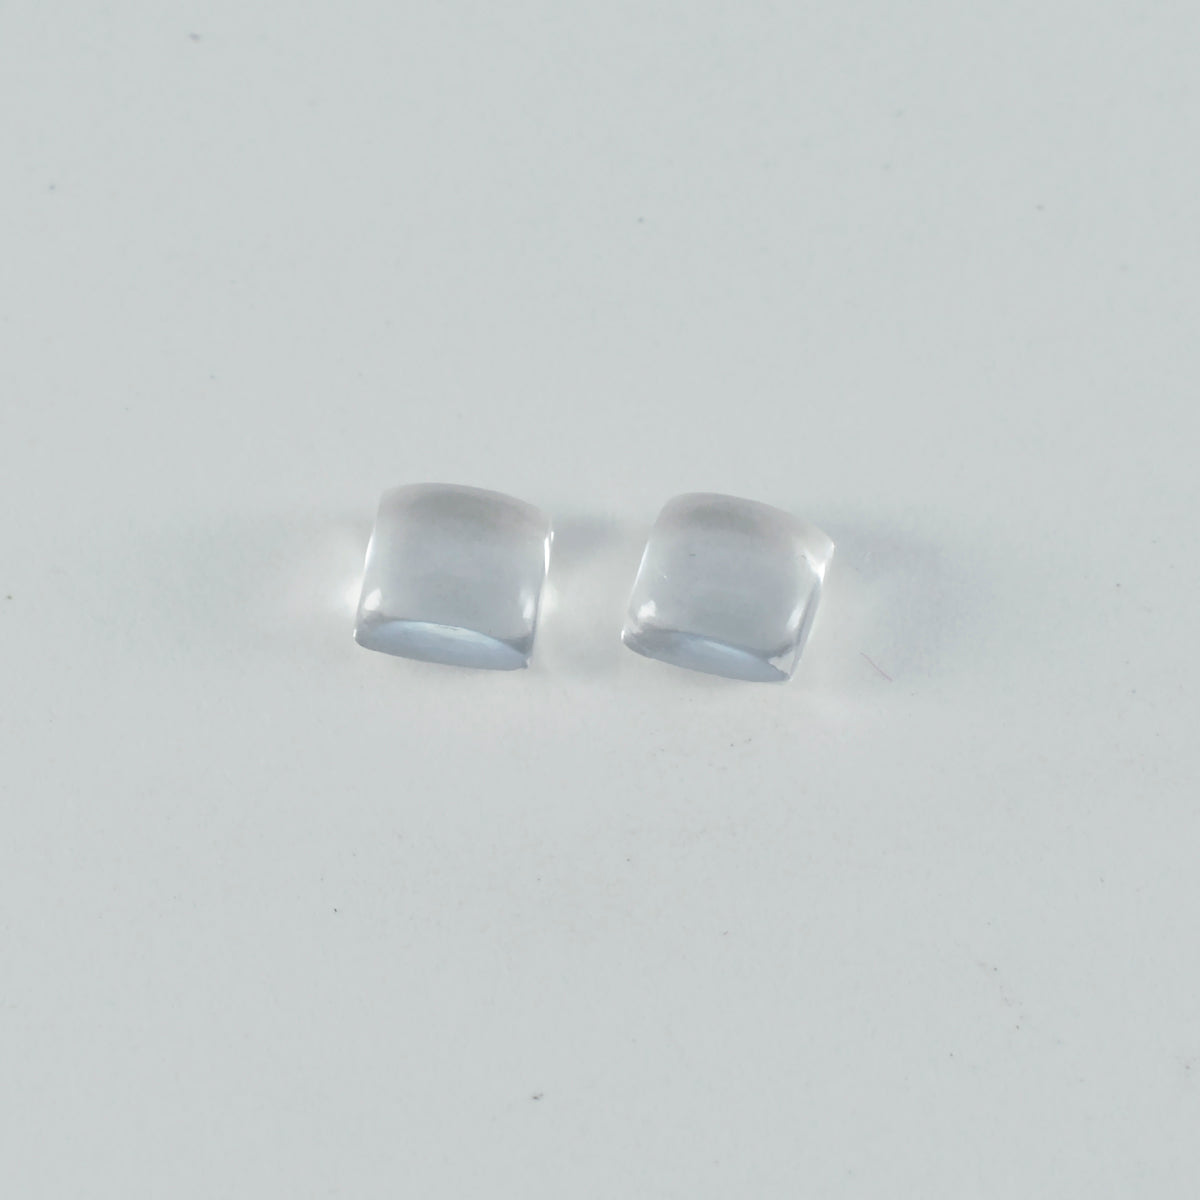 Riyogems 1PC White Crystal Quartz Cabochon 7x7 mm Square Shape pretty Quality Gemstone